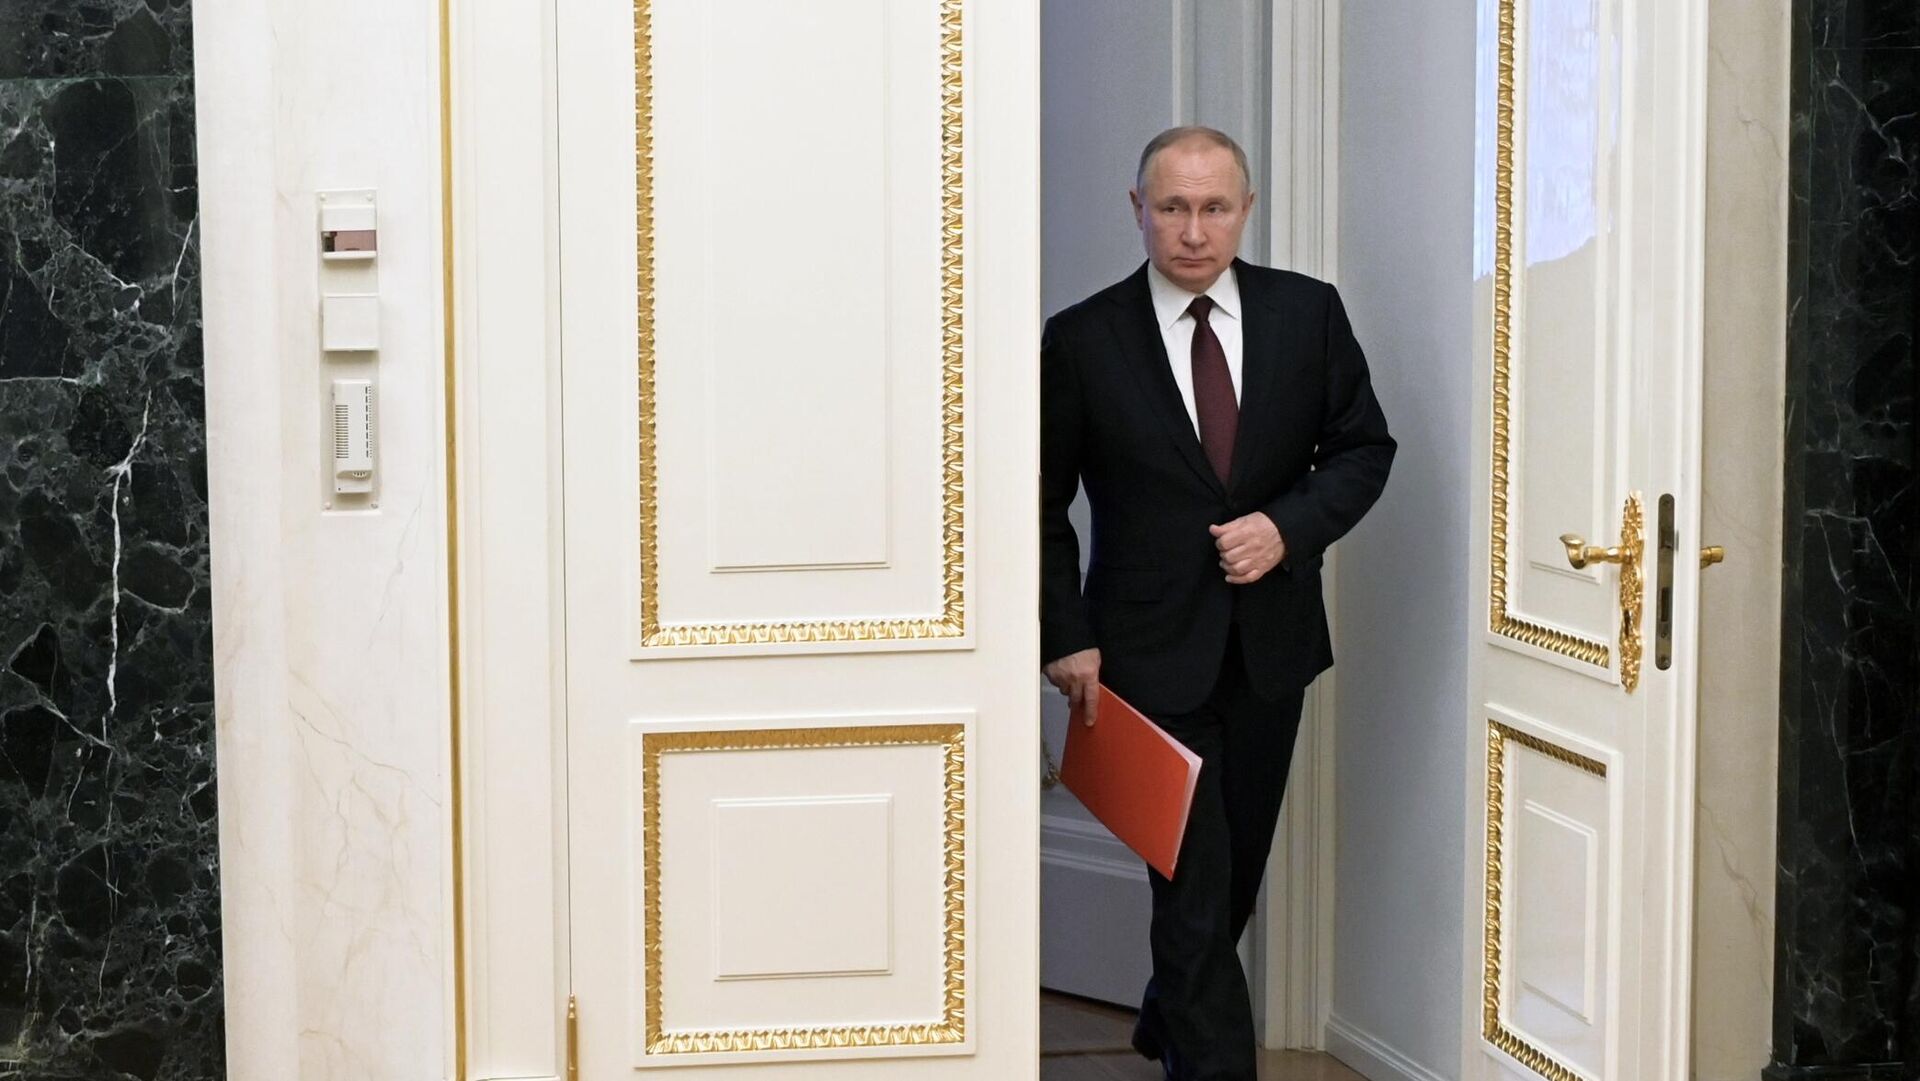 ՌԴ նախագահ Վլադիմիր Պուտինը ՌԴ Անվտանգության խորհրդի մշտական անդամների հետ օպերատիվ խորհրդակցության մեկնարկից առաջ (25 փետրվարի, 2022թ)․ Մոսկվա - Sputnik Արմենիա, 1920, 07.04.2022